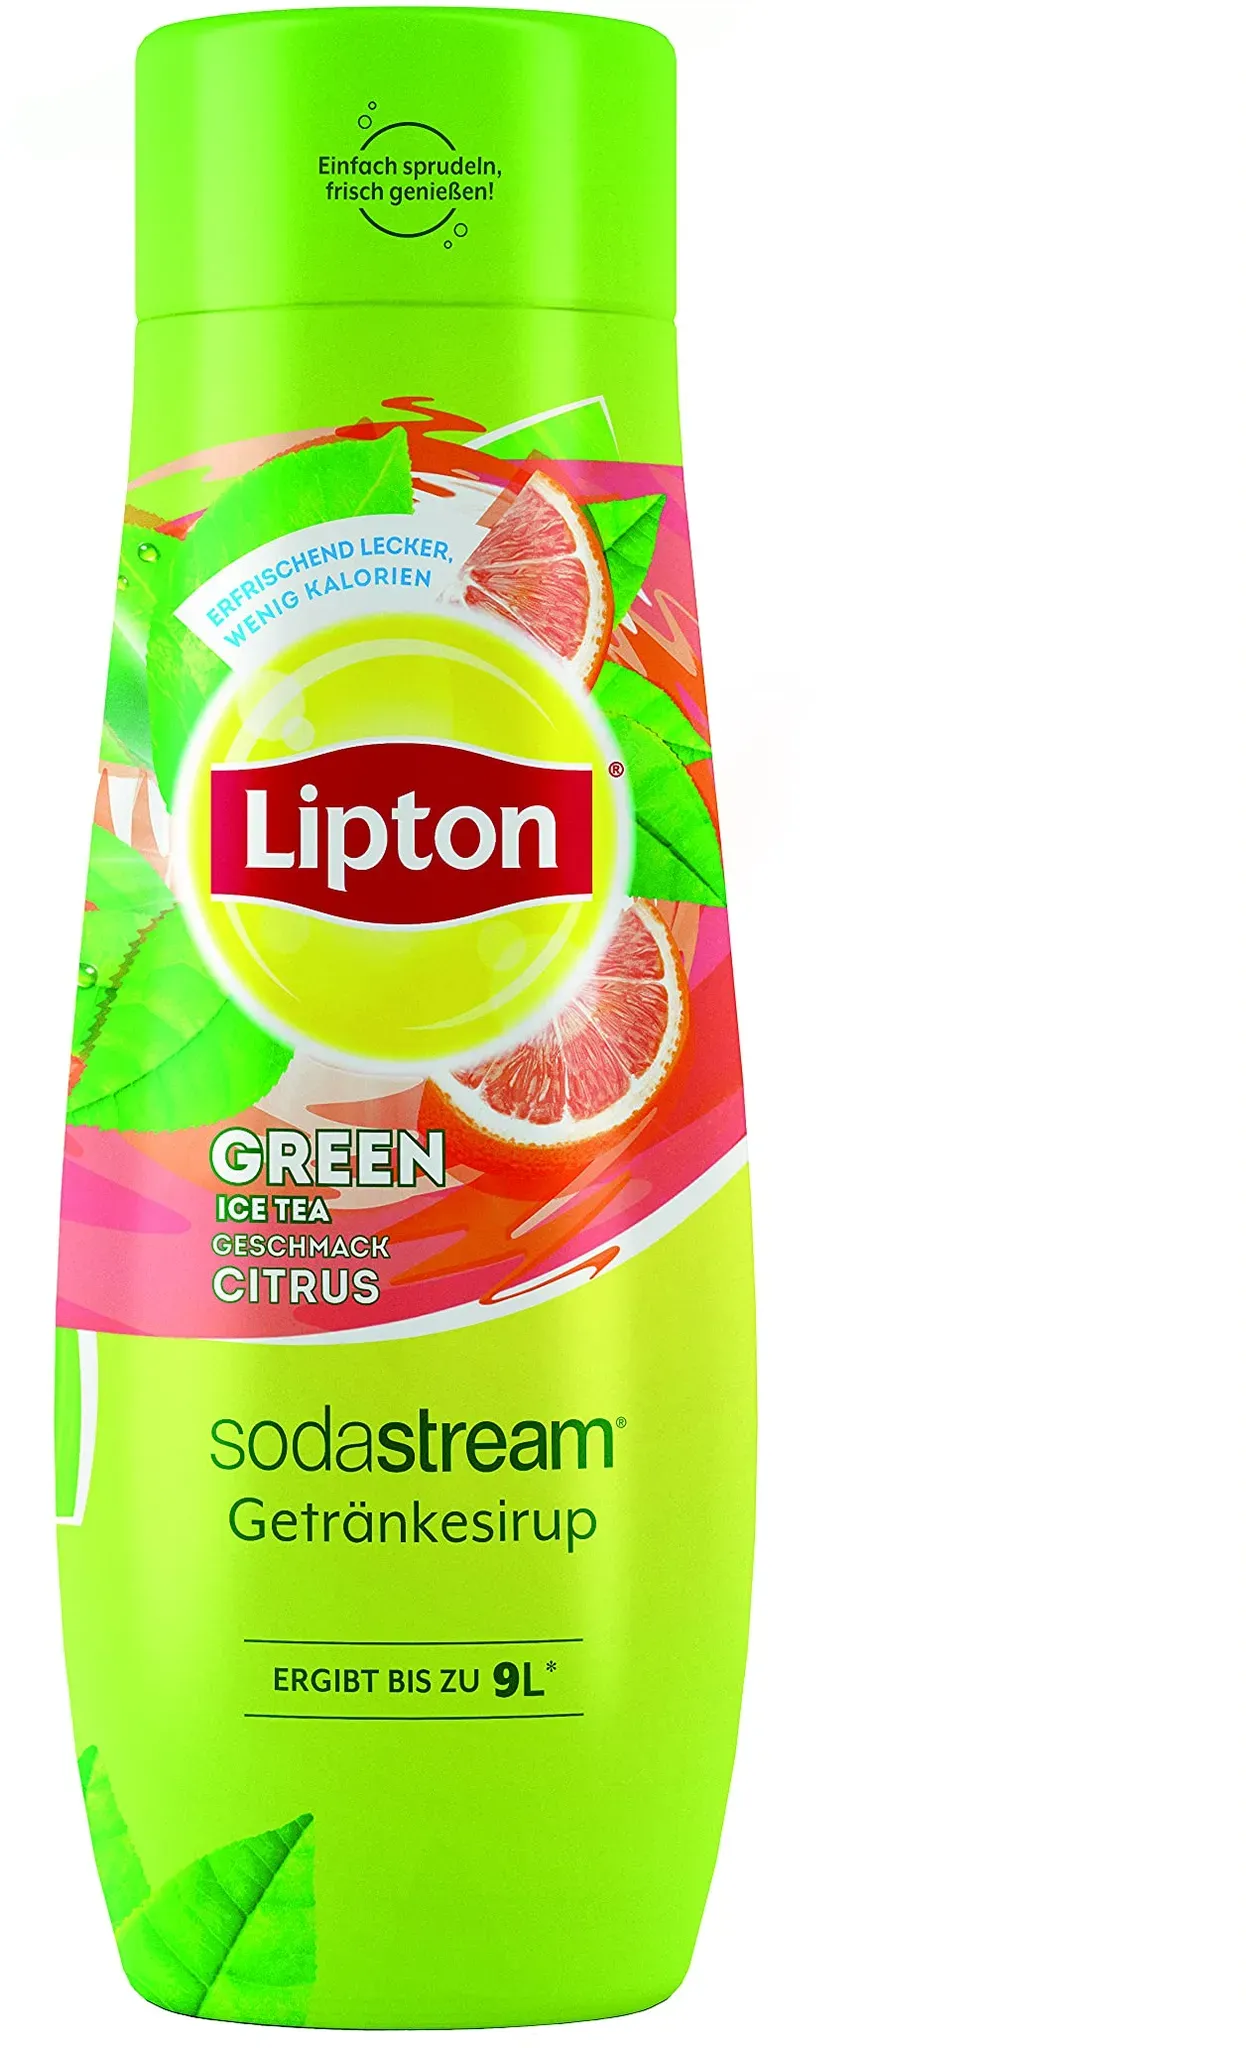 Bild von Lipton Green Ice Tea Konzentrat mit Zitrusgeschmack 440 ml, grün